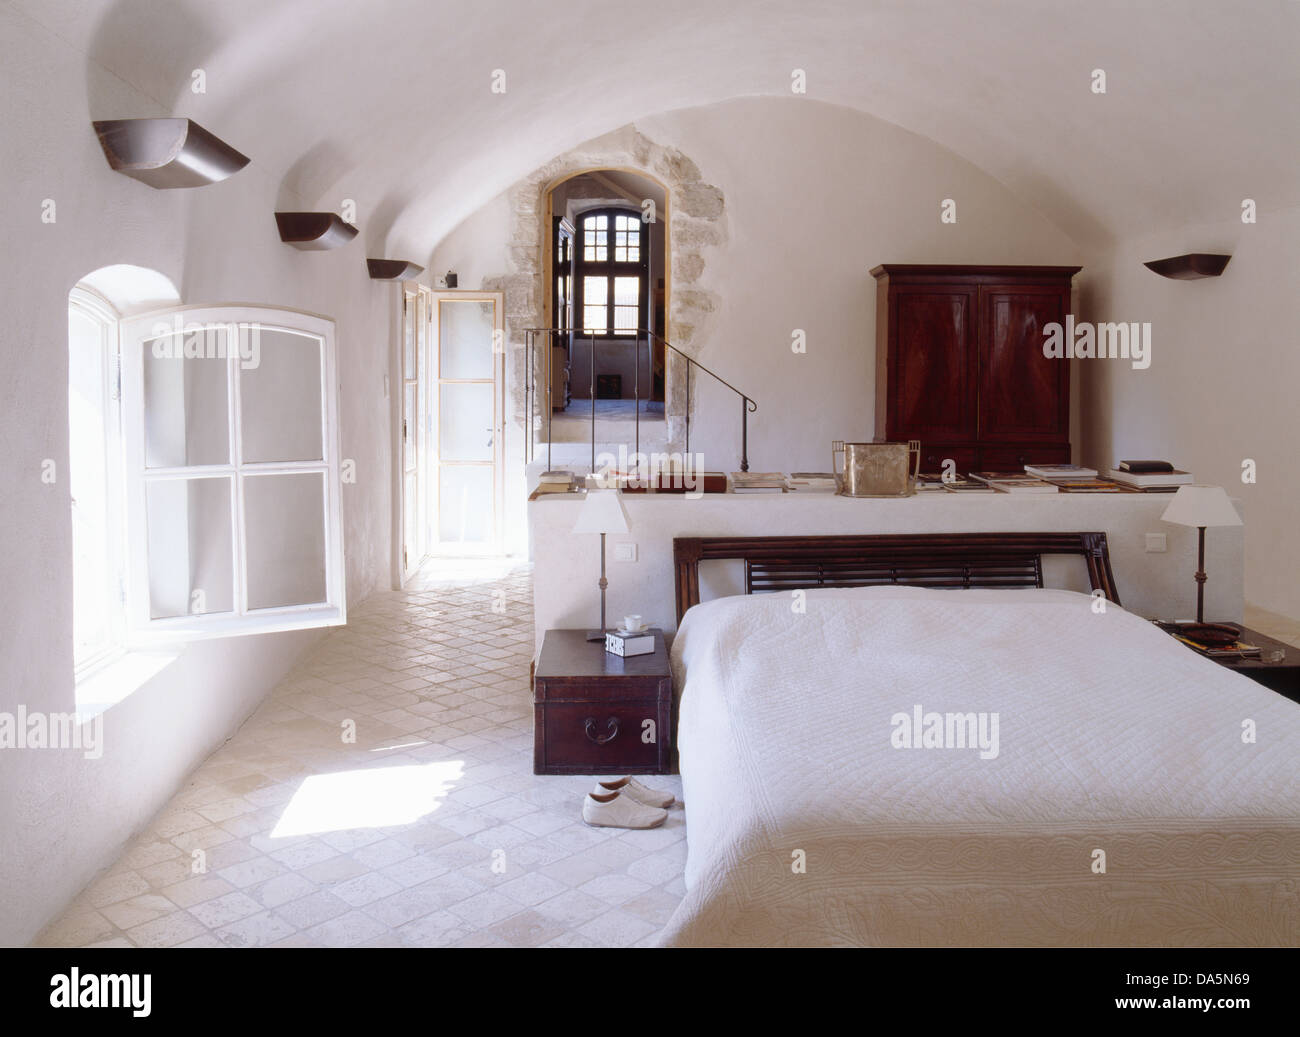 Bianco con pavimenti piastrellati in ceramica nella luminosa e ariosa e paese francese camera con piccole lampade su tavole montate su entrambi i lati del letto matrimoniale Foto Stock